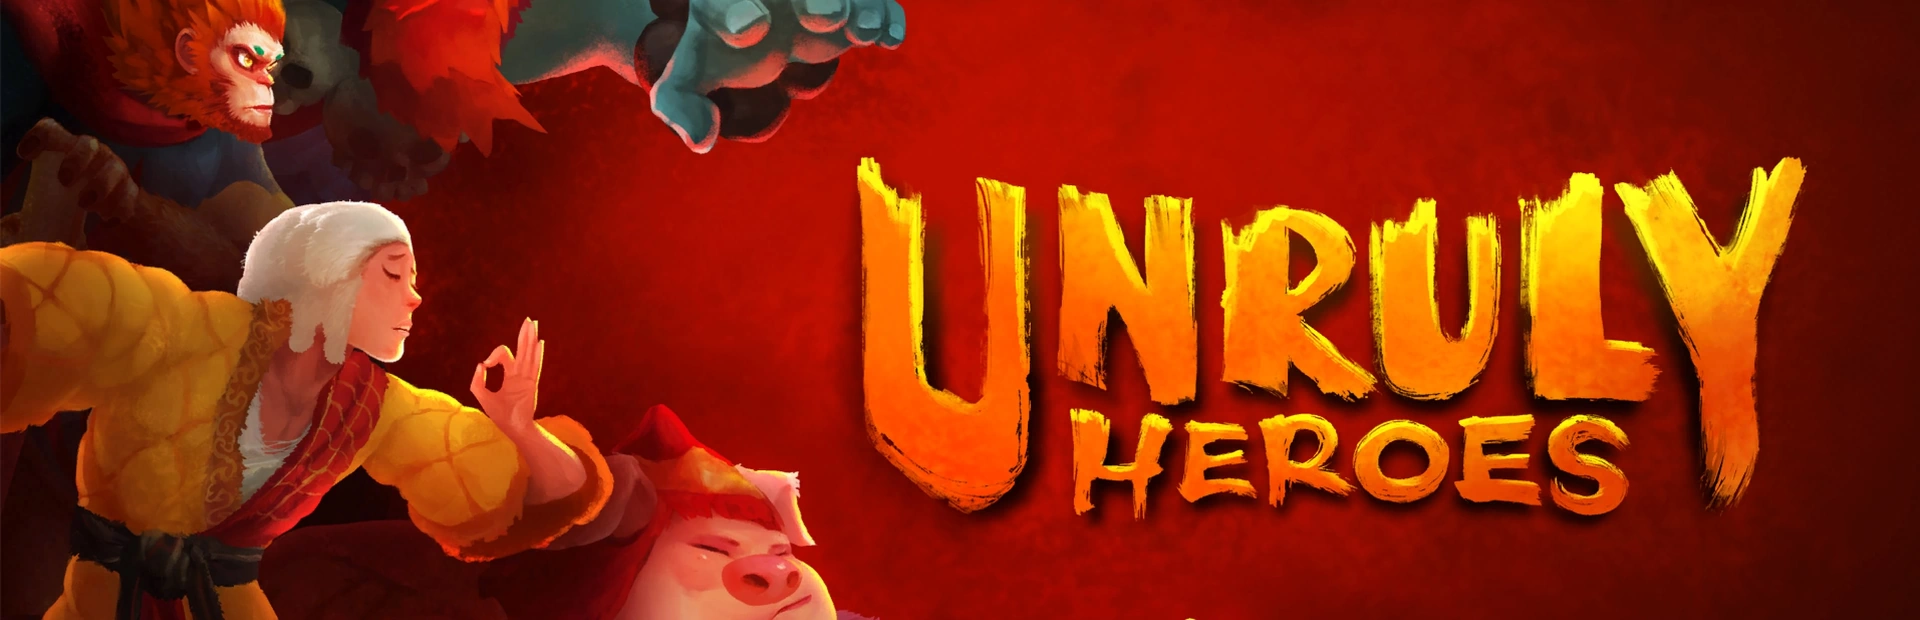 دانلود بازی Unruly Heroes برای کامپیوتر | گیمباتو